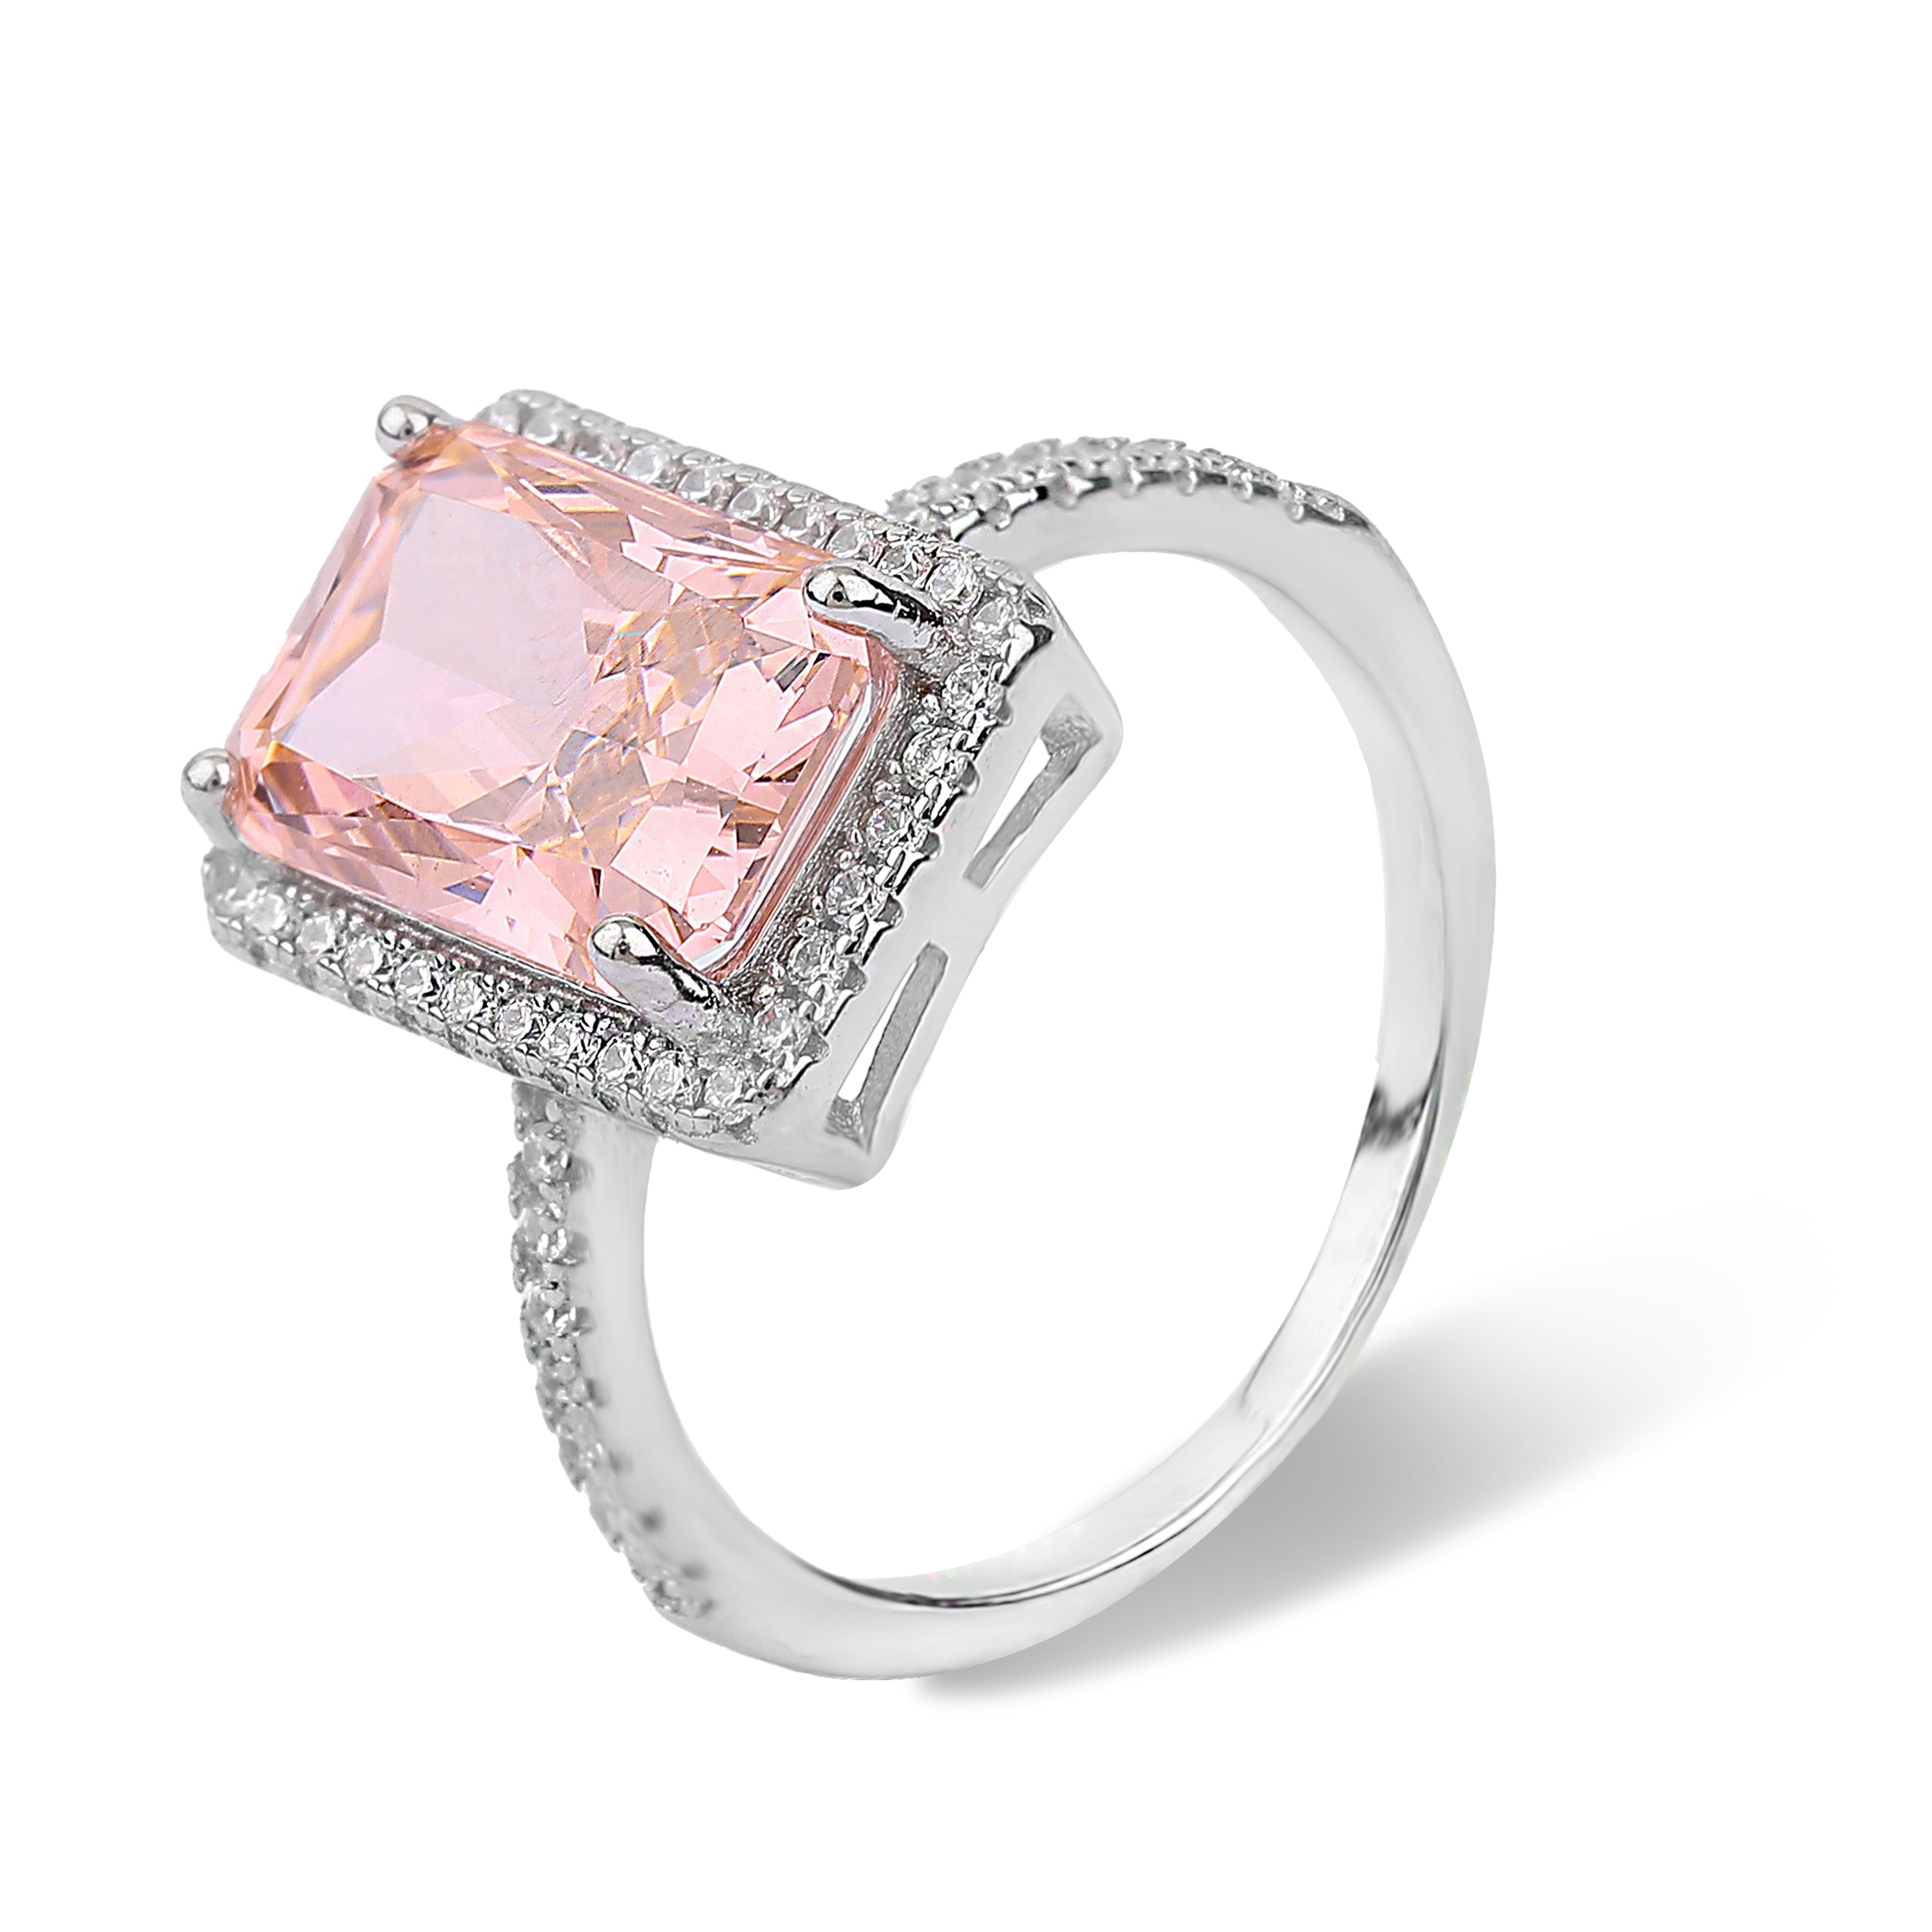 Peach sapphire gemstone rings